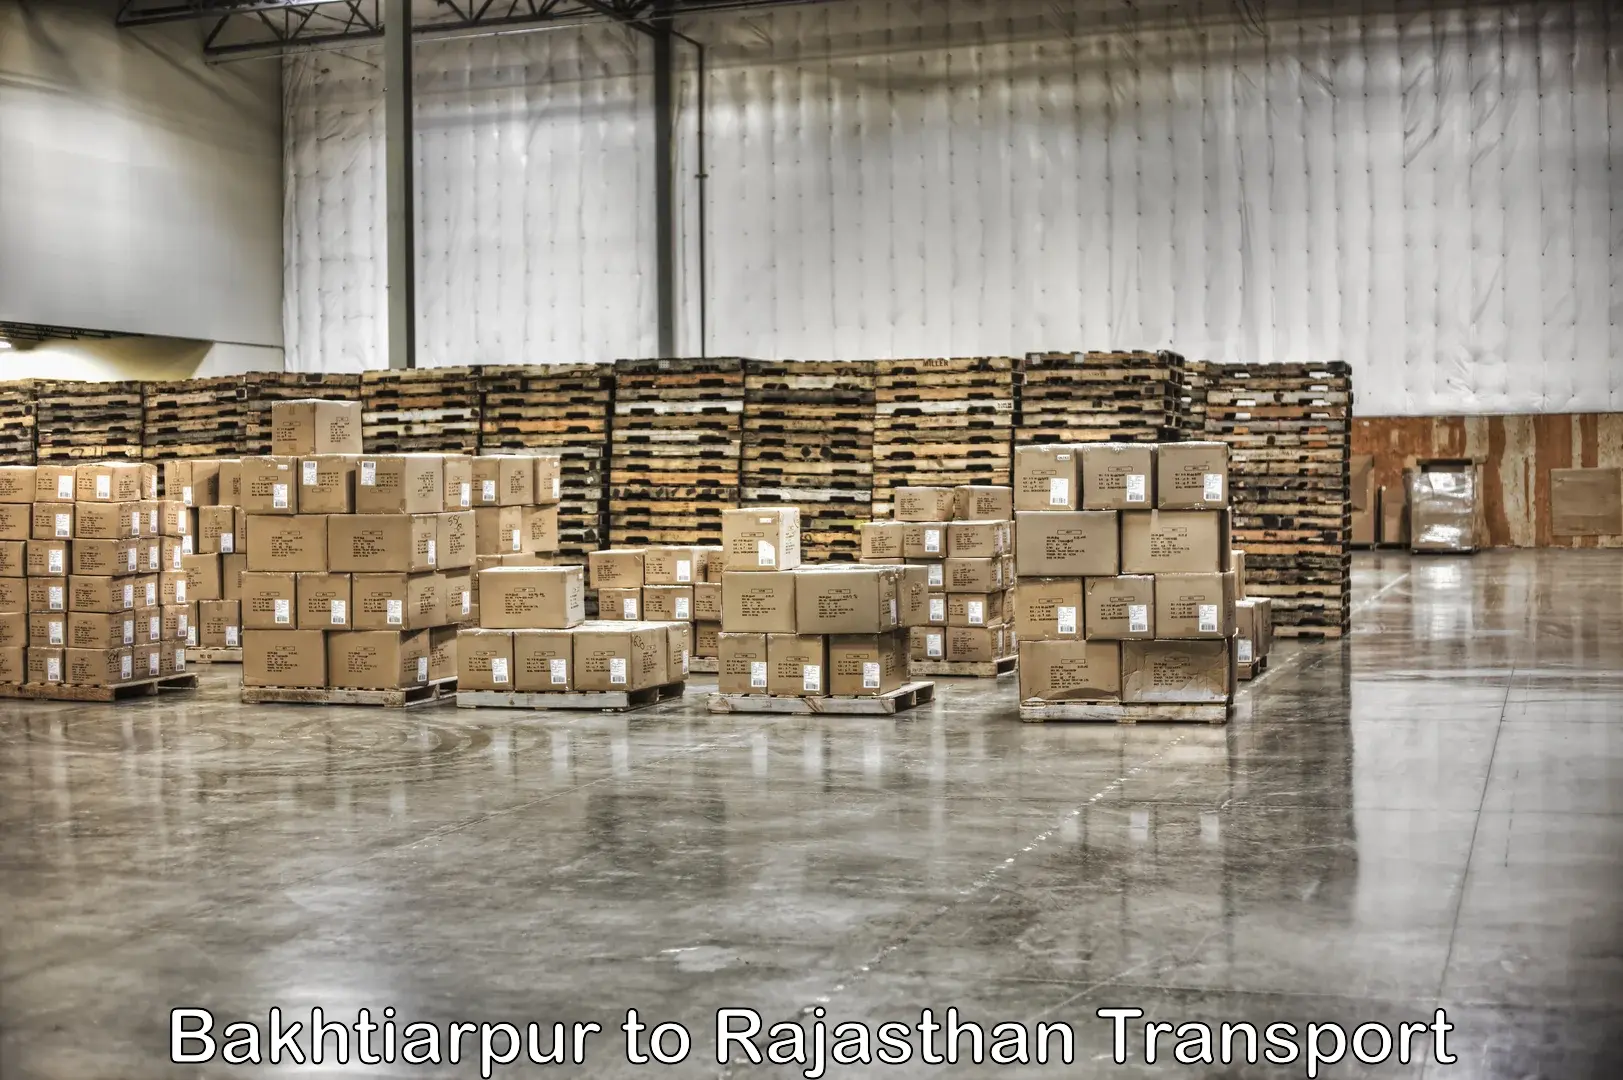 Furniture transport service Bakhtiarpur to Lakheri